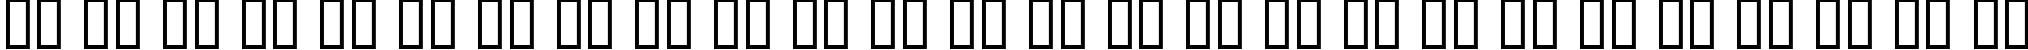 Пример написания английского алфавита шрифтом Manege Deco